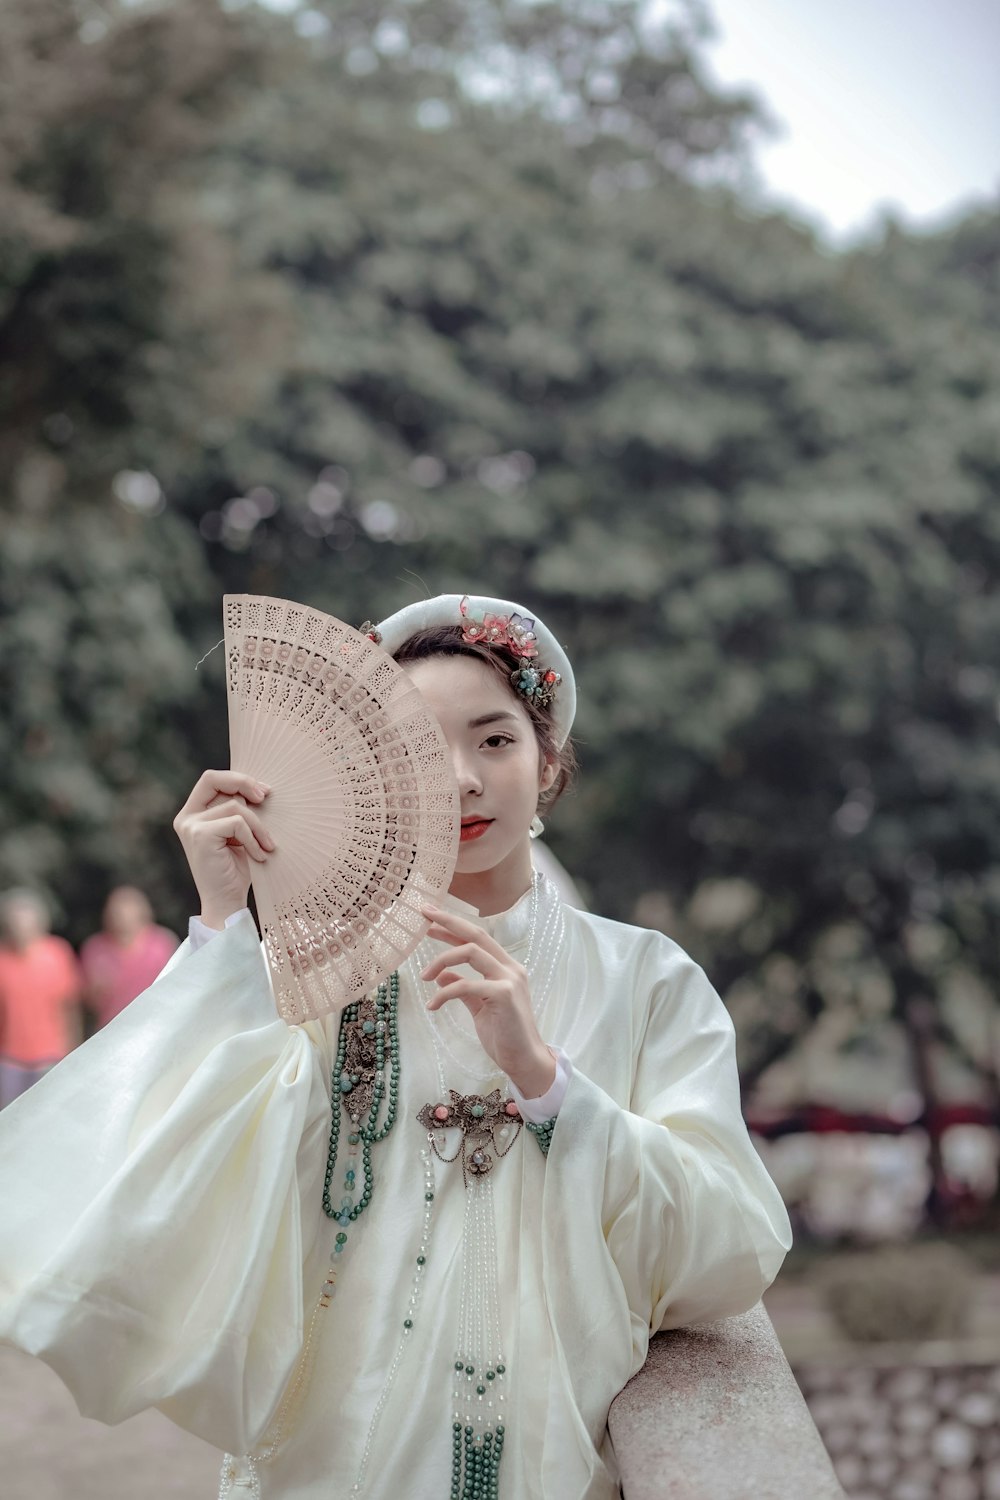 a woman in a white dress holding a fan